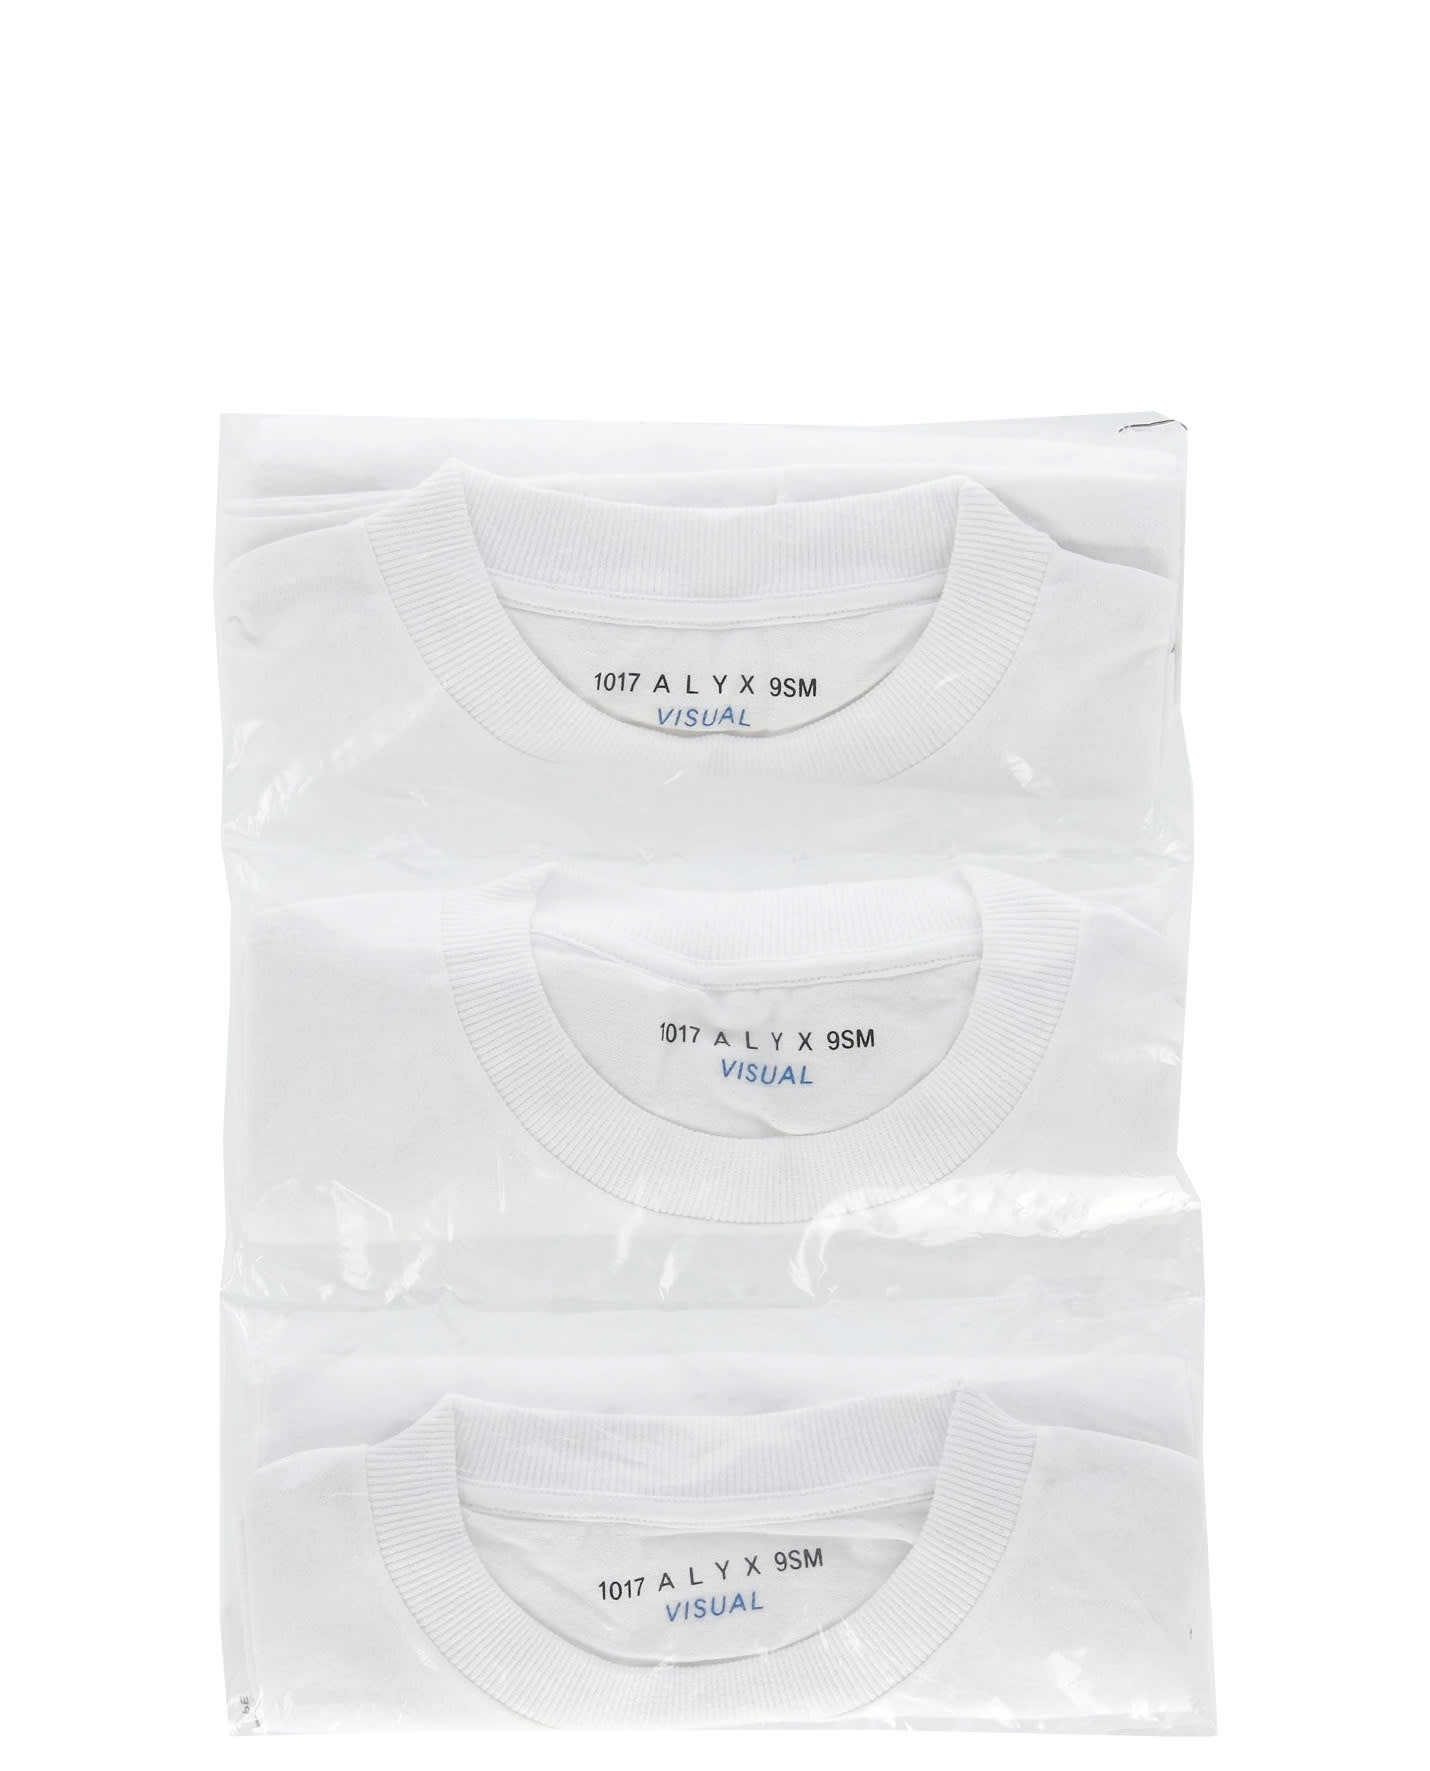 1017 Alyx 9sm Visual Tripack Of White T-shirts